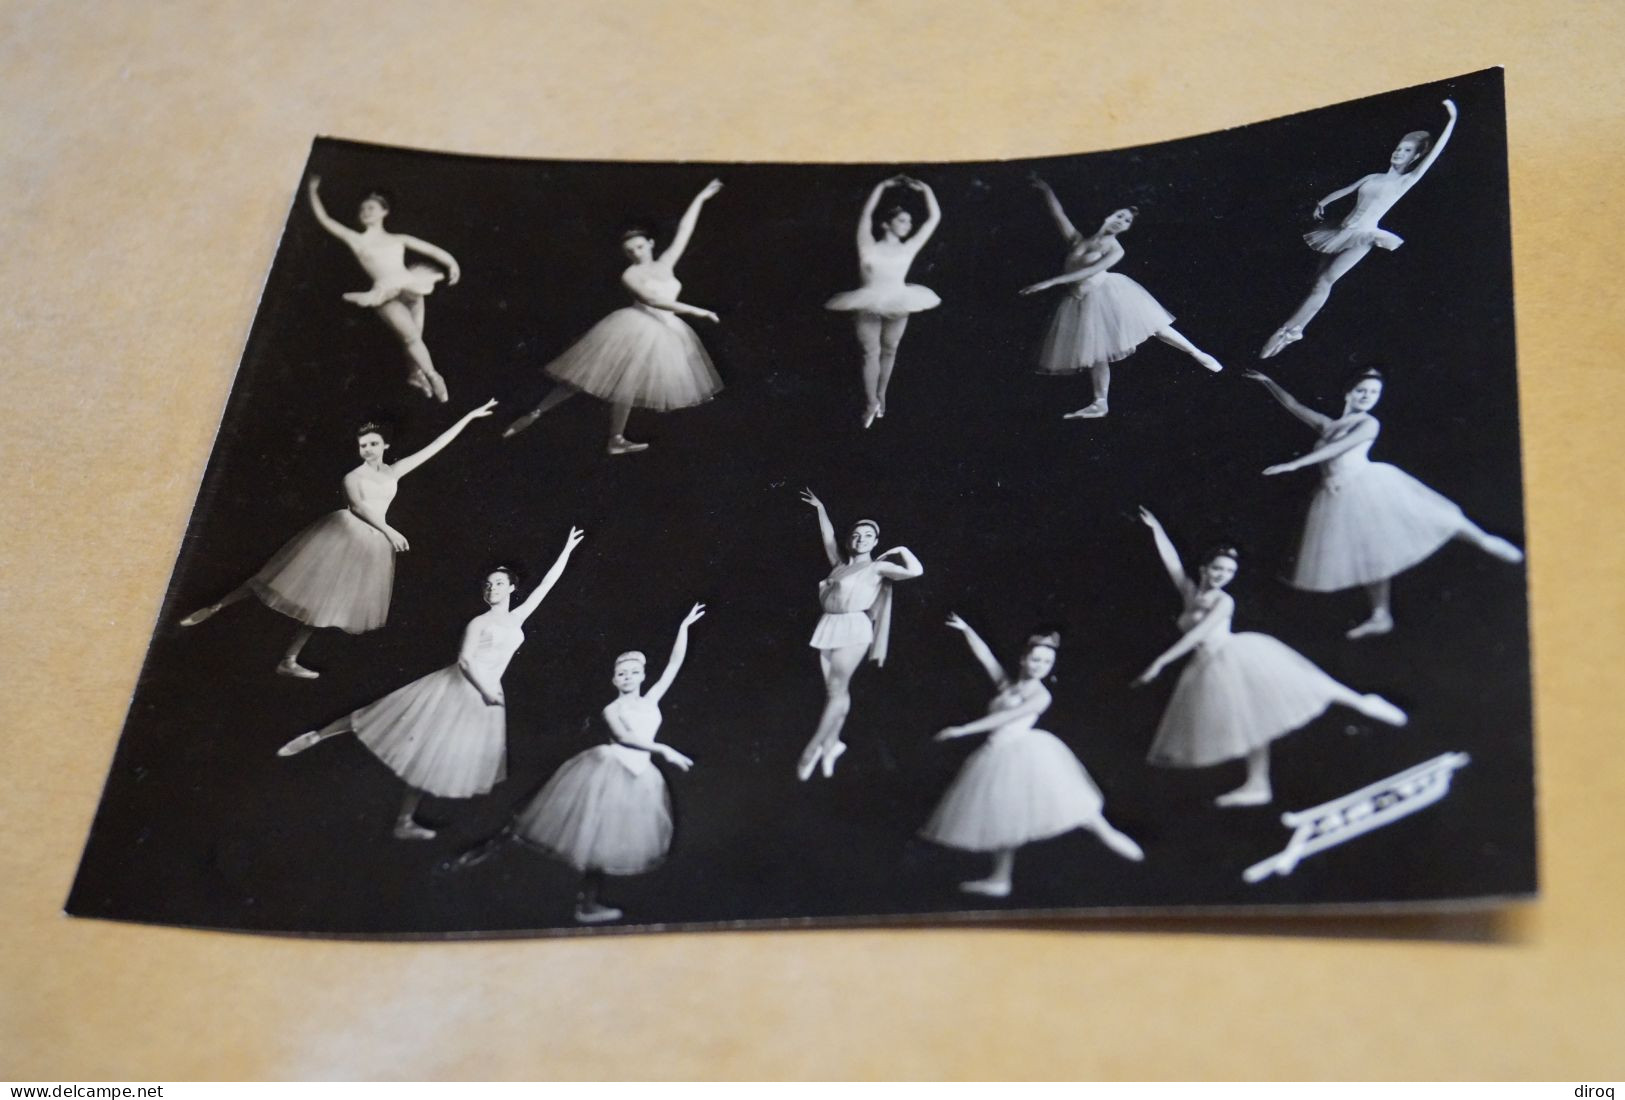 Superbe Photo Ancienne,Théatre De Verviers,1966-1967,Danseuses,photo Montage,16 Cm./12 Cm. - Beroemde Personen